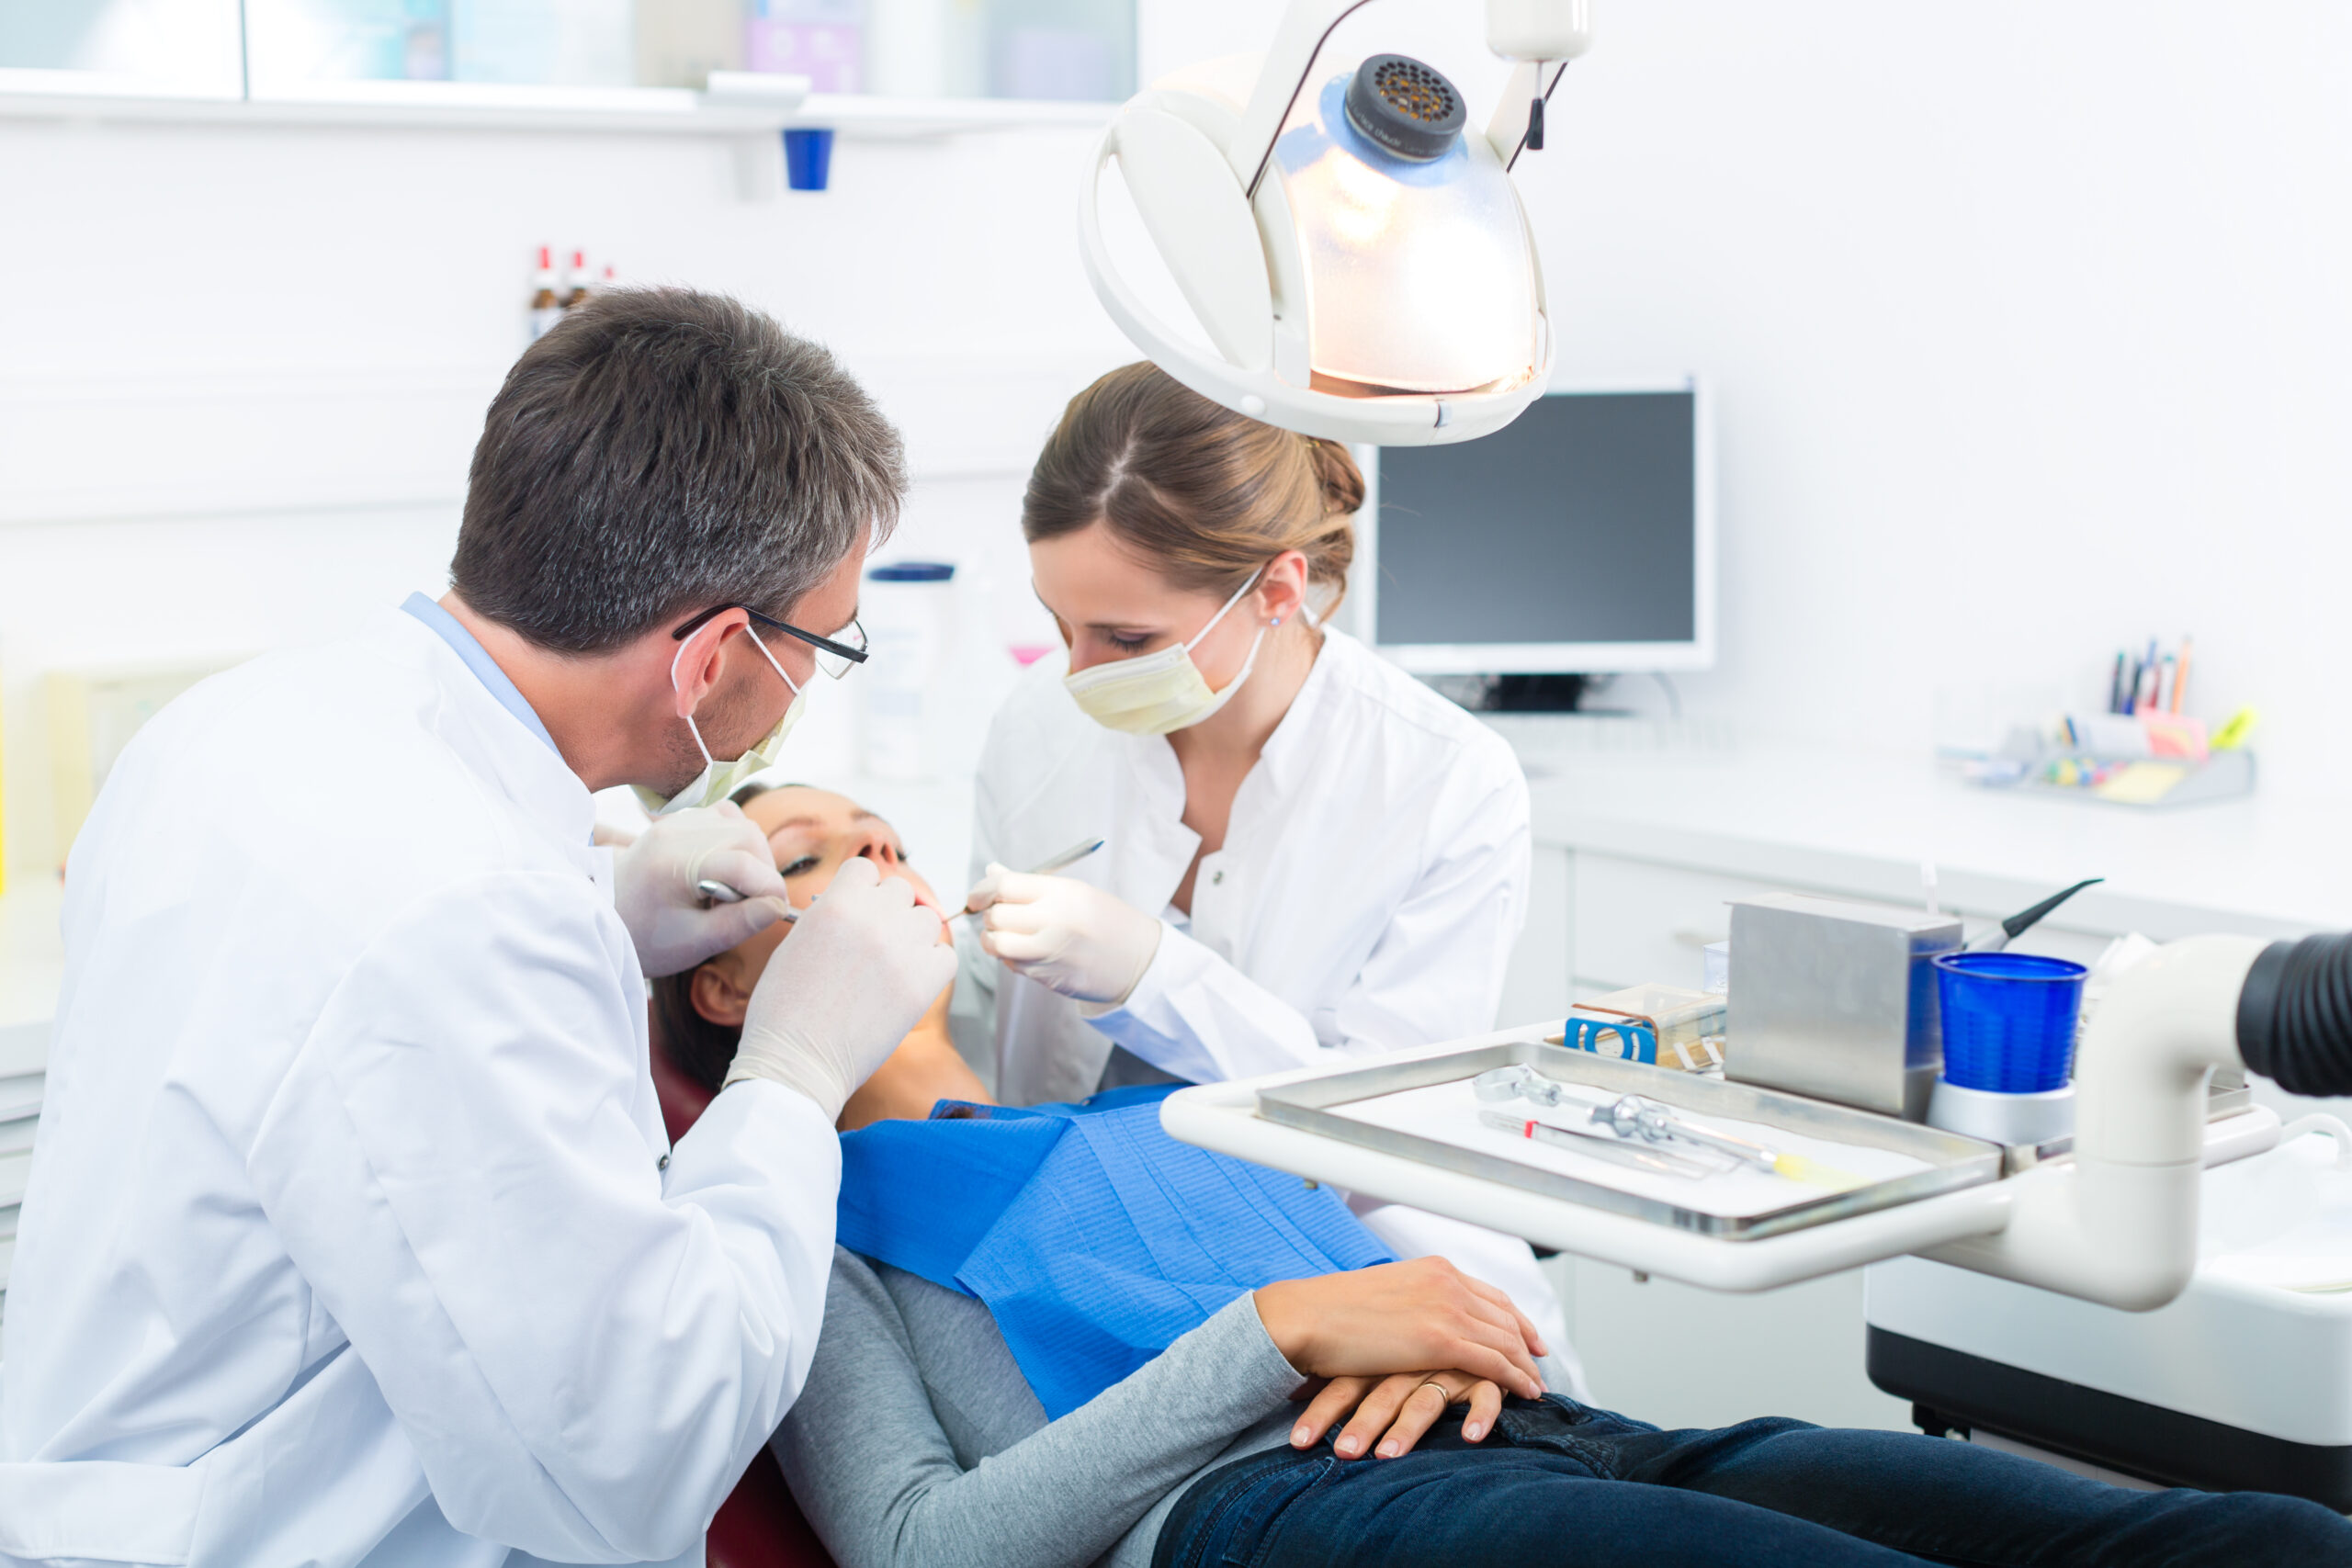 Merging dental practices